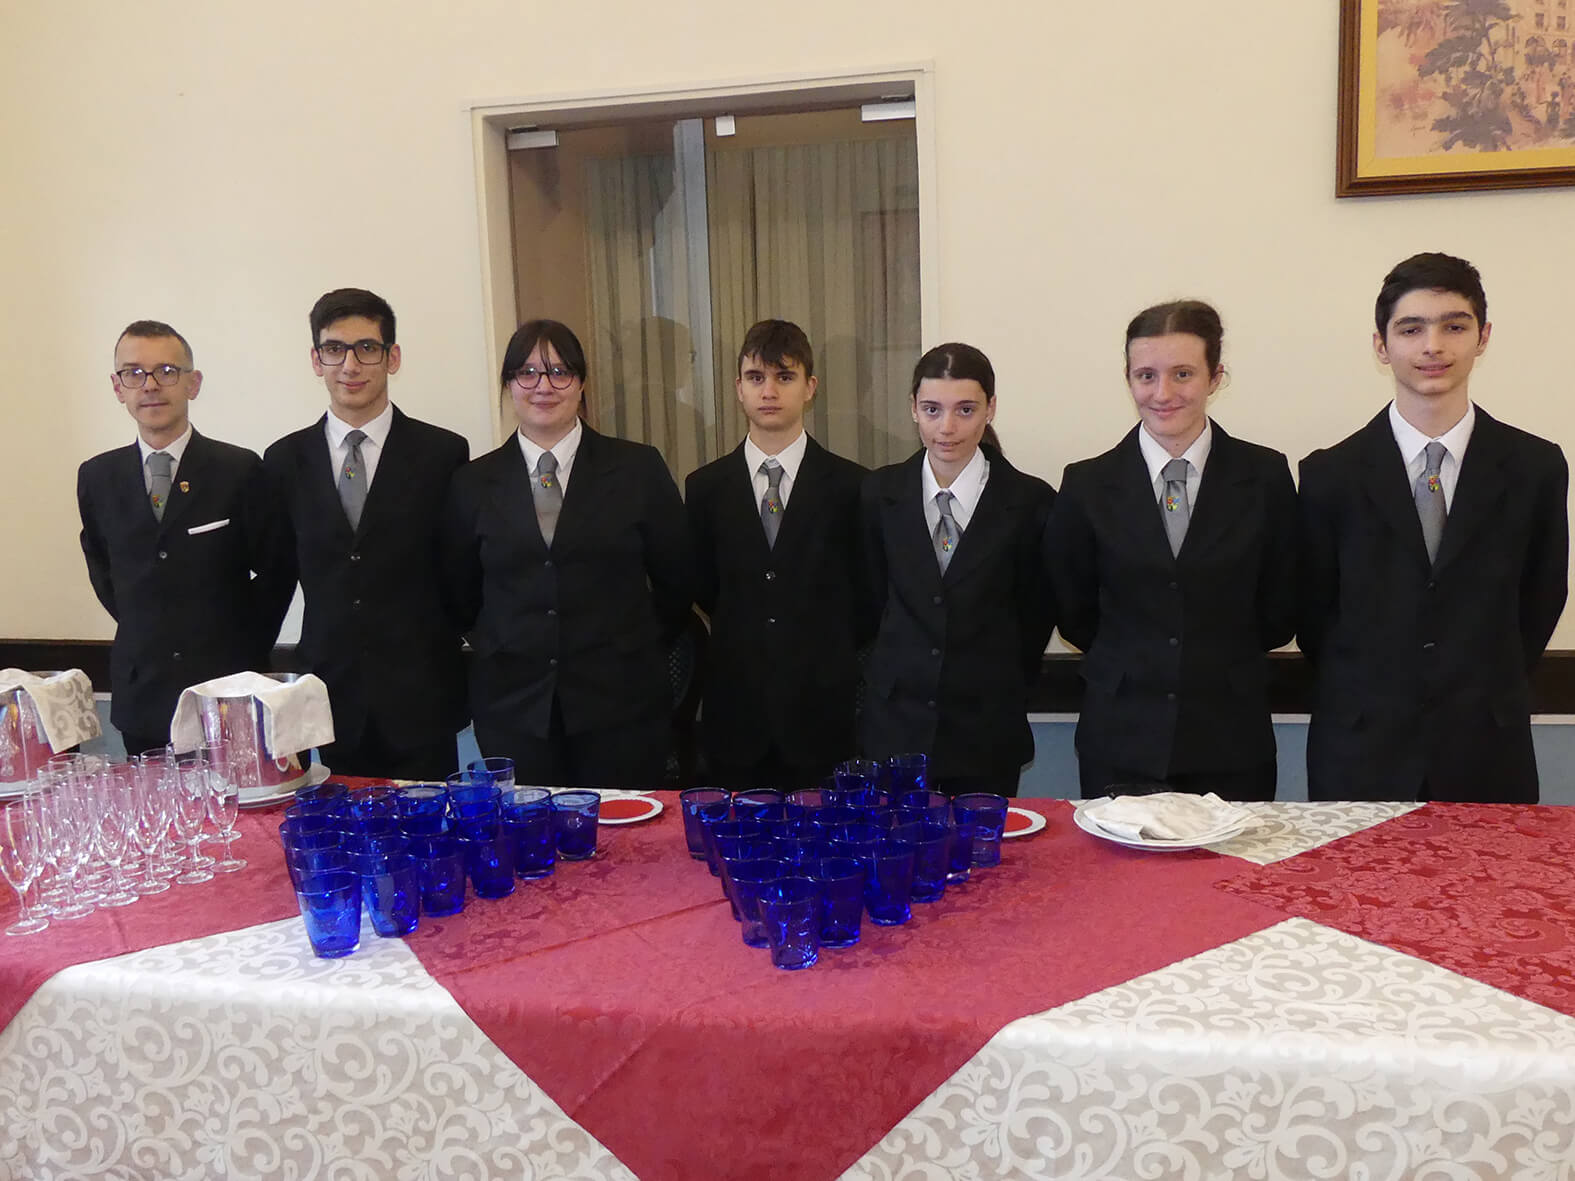 Alcuni studenti dell'Alberghiero di Varallo durante l'evento.